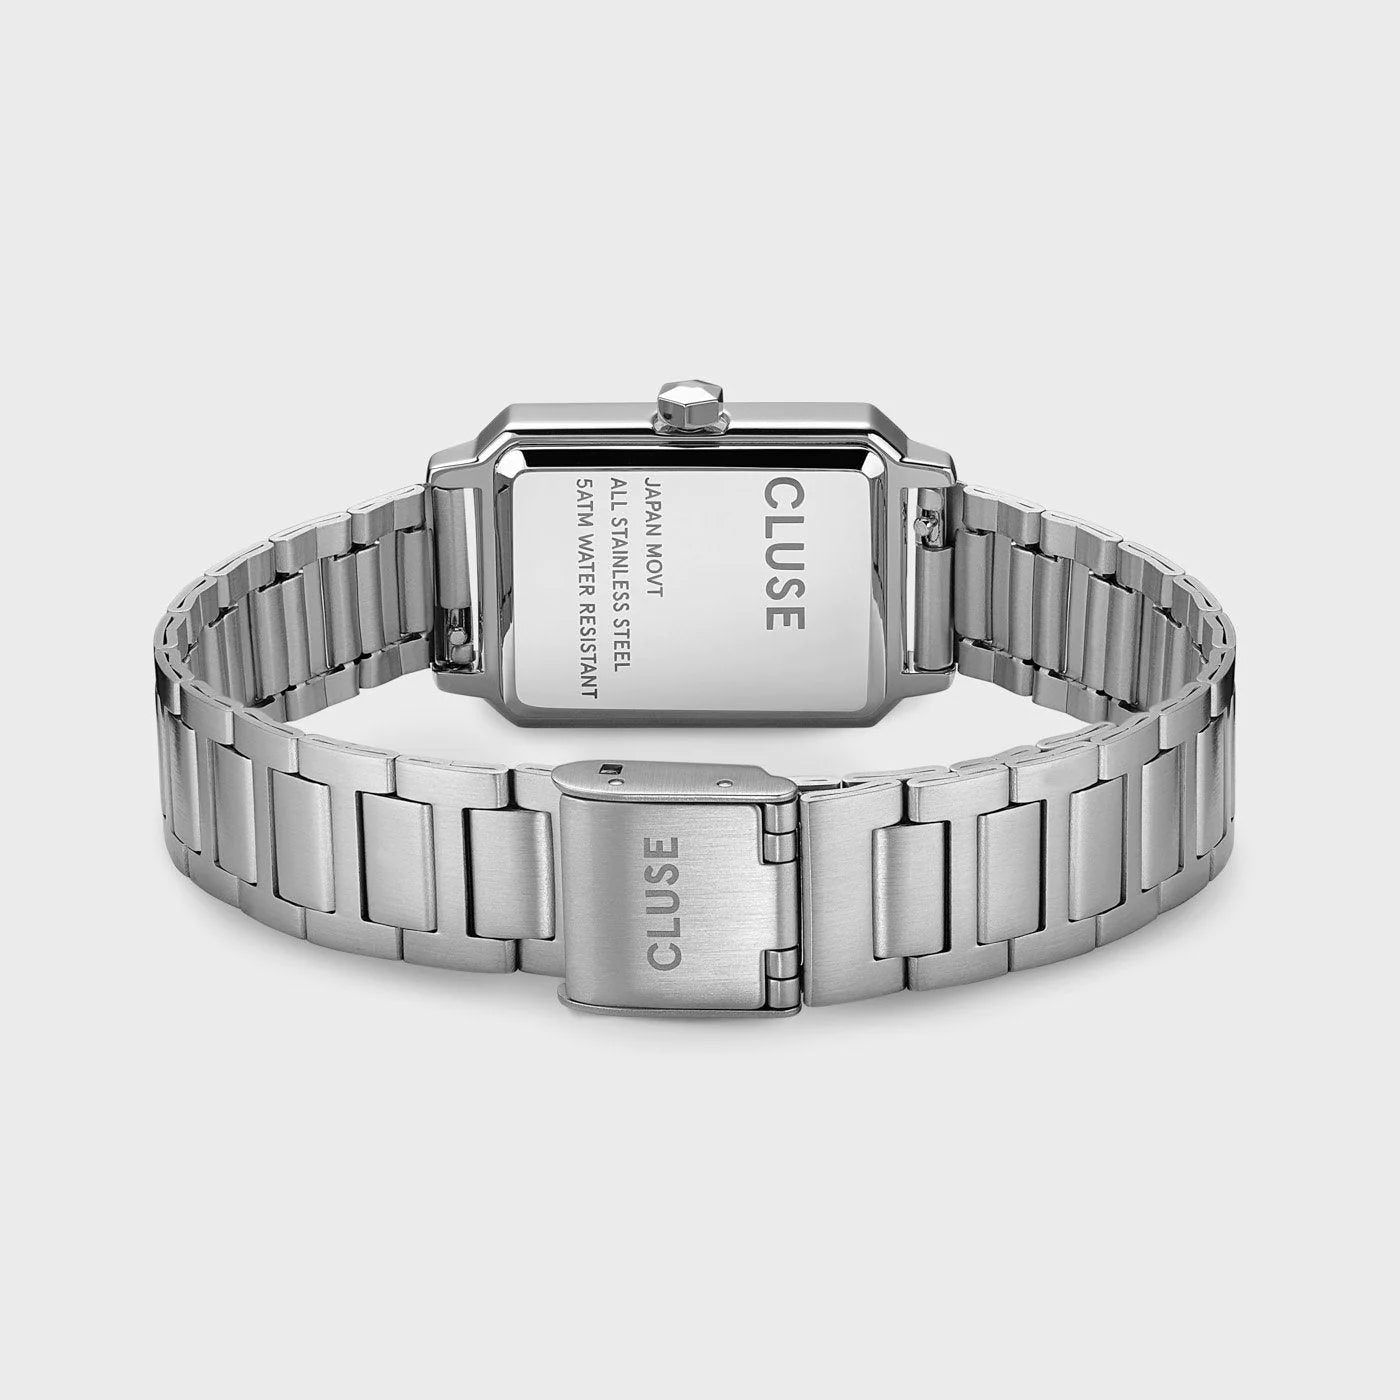 Gehäuseboden und Edelstahl-Armband der Cluse "Fluette" Stahl-Uhr mit silberfarbenem Gehäuse